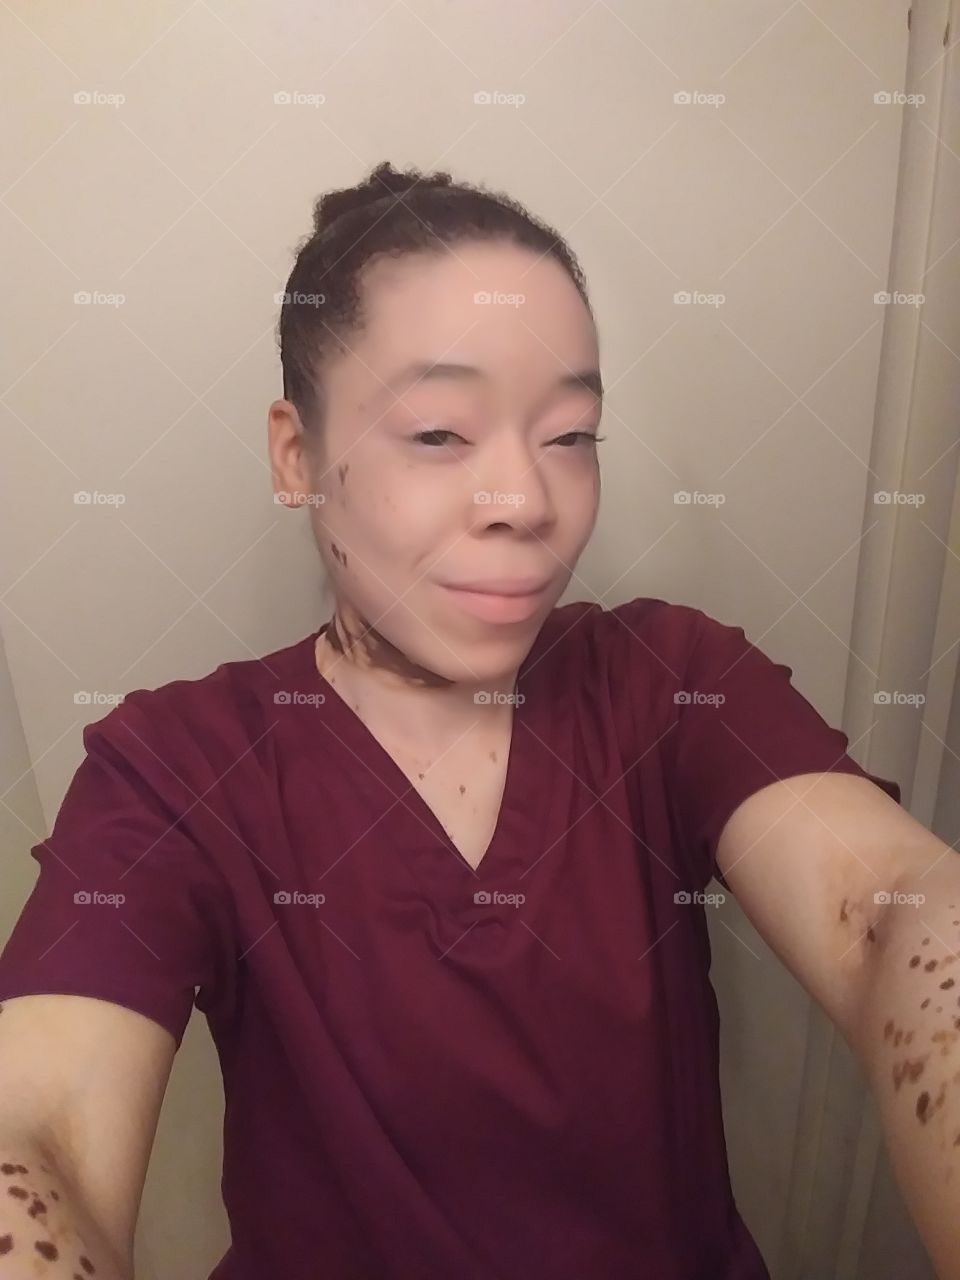 vitiligo queen